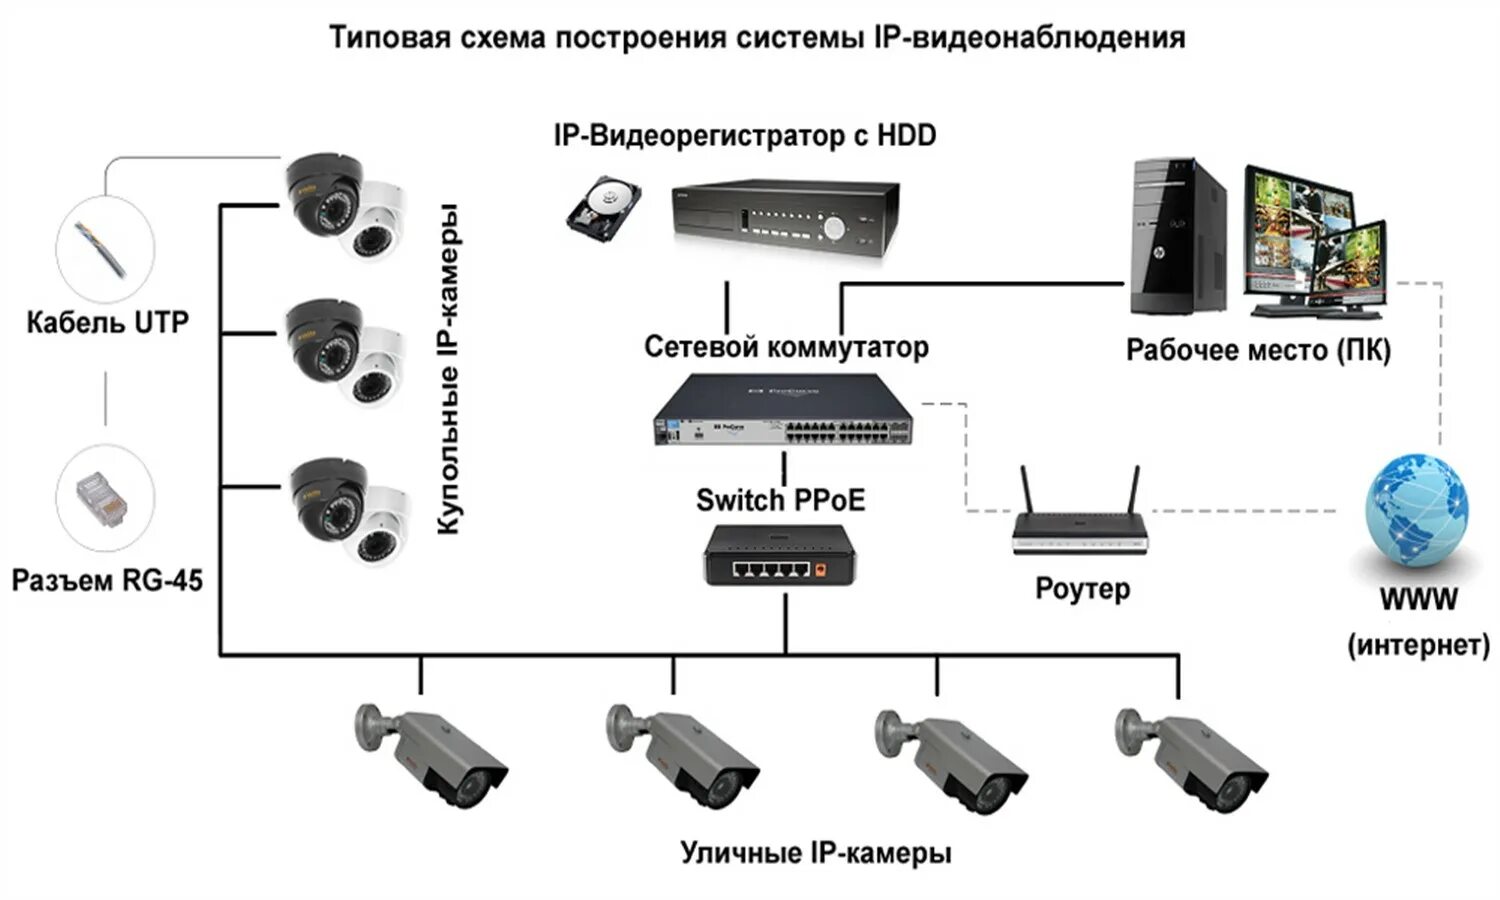 Система аналогового видеонаблюдения структурная схема. Присоединение камеры видеонаблюдения схема подключения. Схема установки IP камеры видеонаблюдения. Схема подключения видеорегистратора к IP-камерам видеонаблюдения.